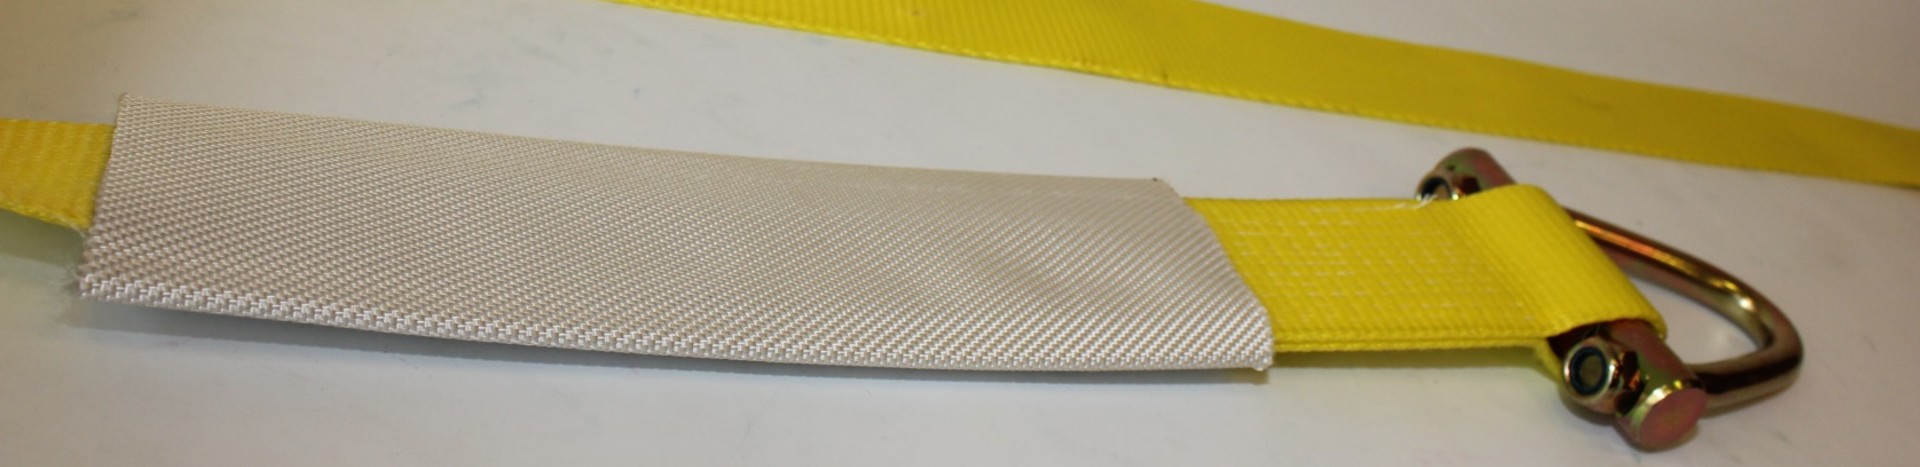 Polyurethane coating for flat slings